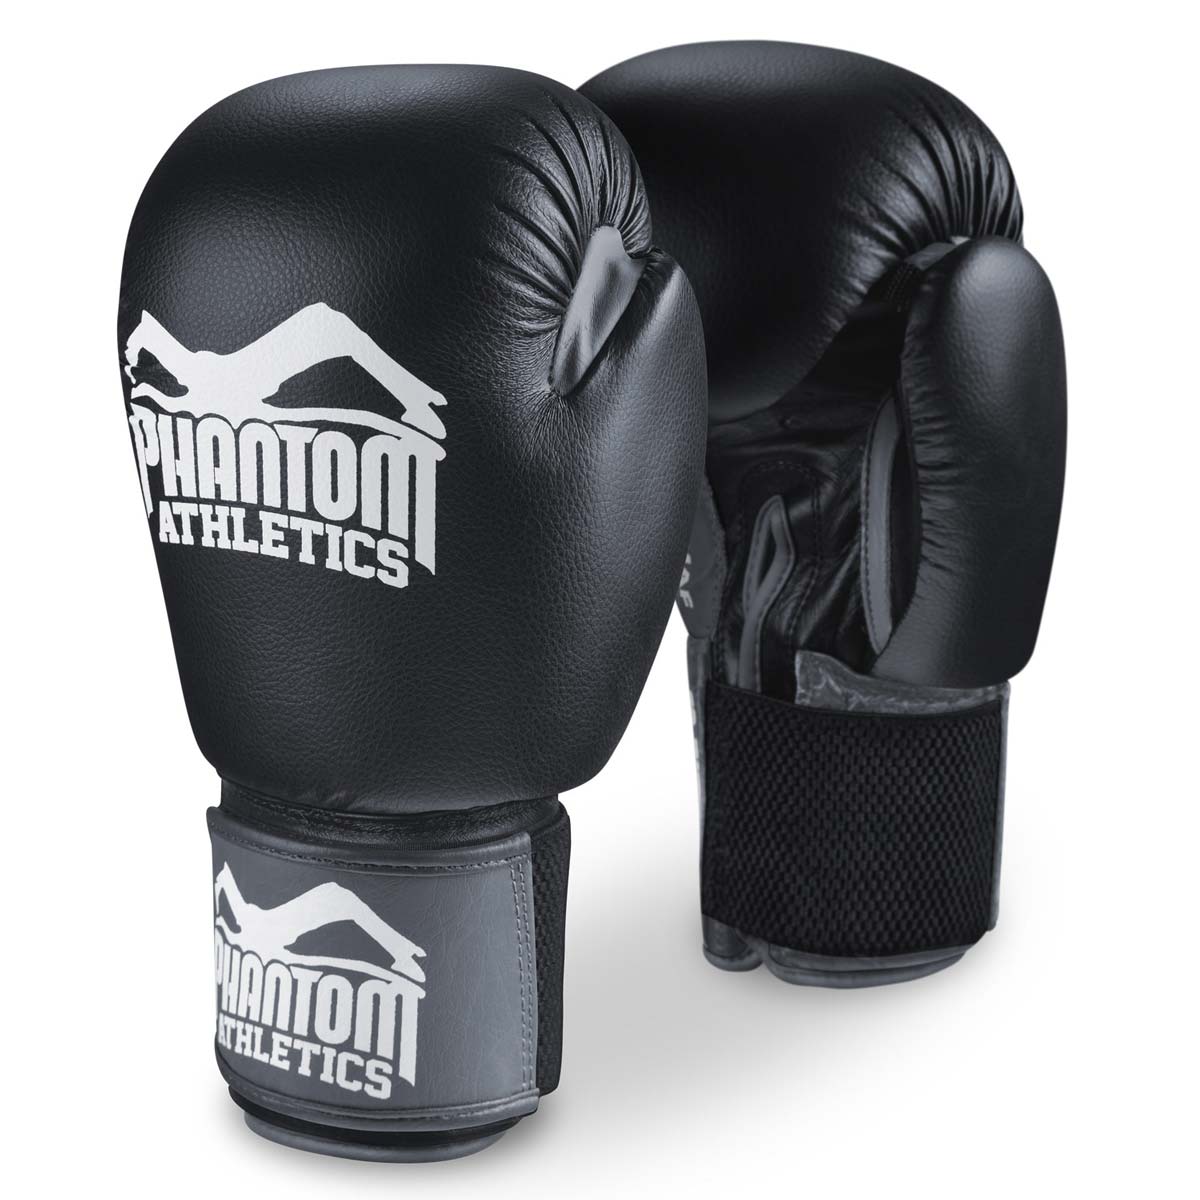 Boksarske rokavice Phantom Ultra za treninge, sparinge in tekmovanja.